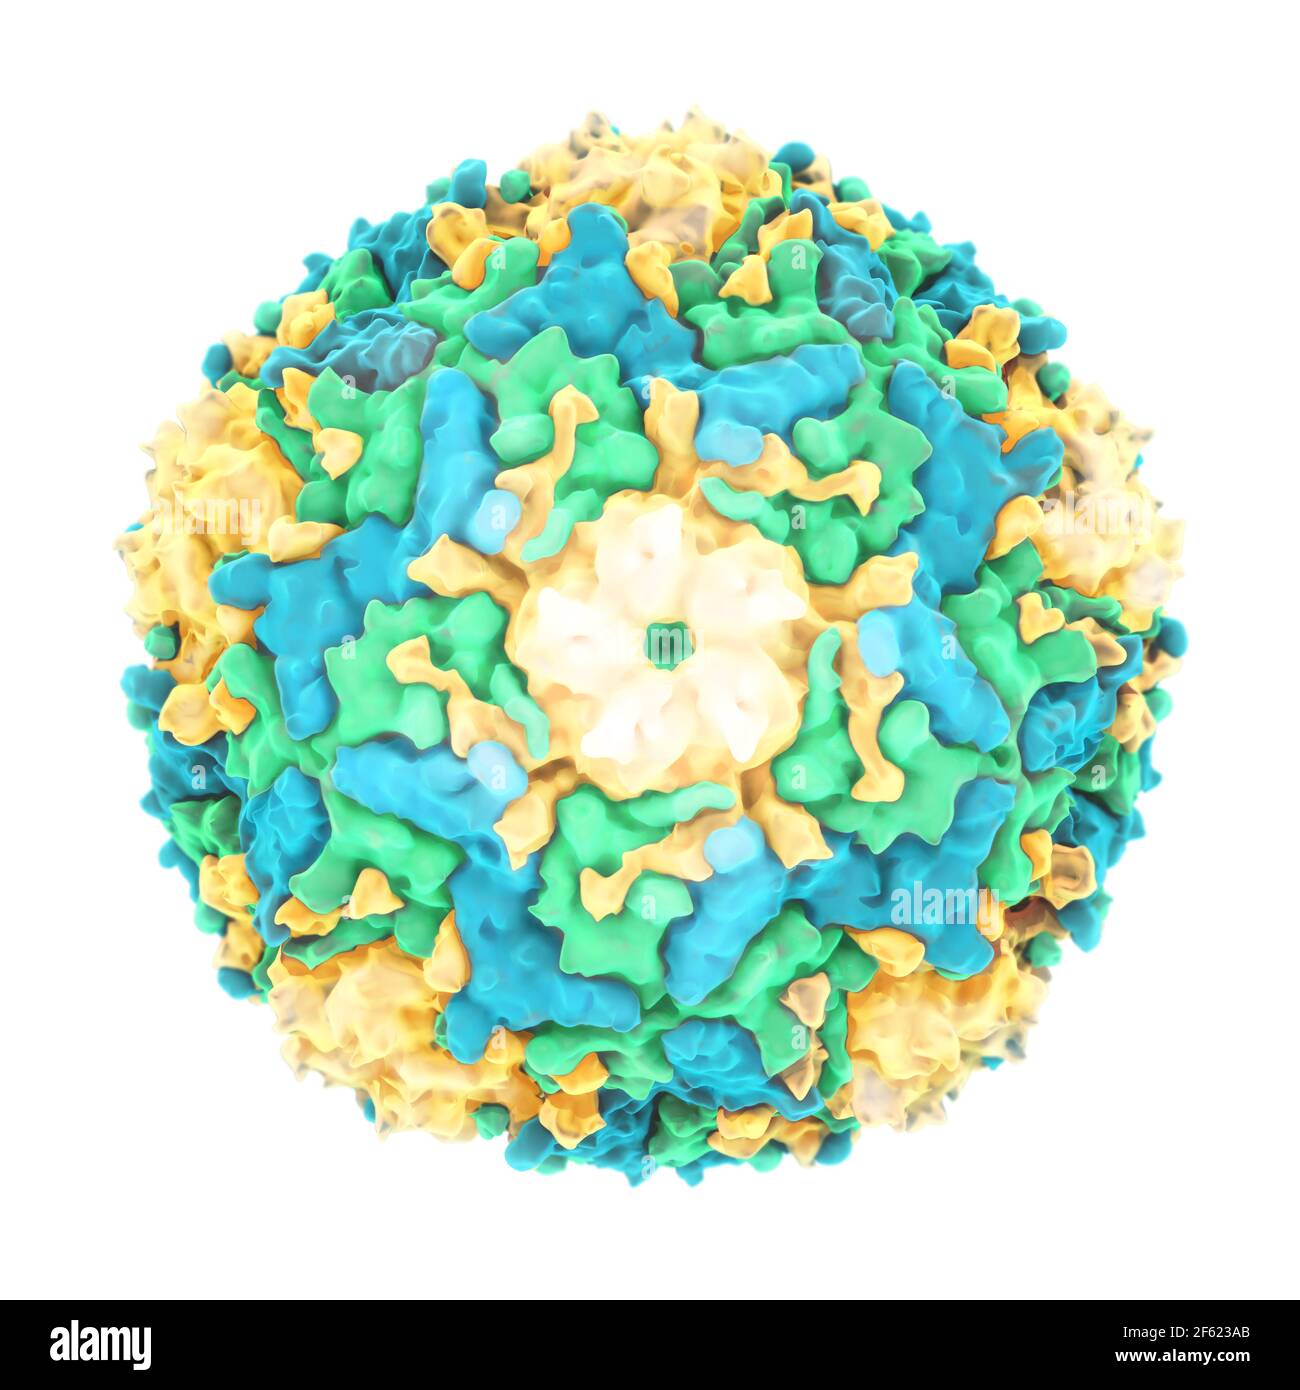 Enterovirus 71, molecular model Stock Photo